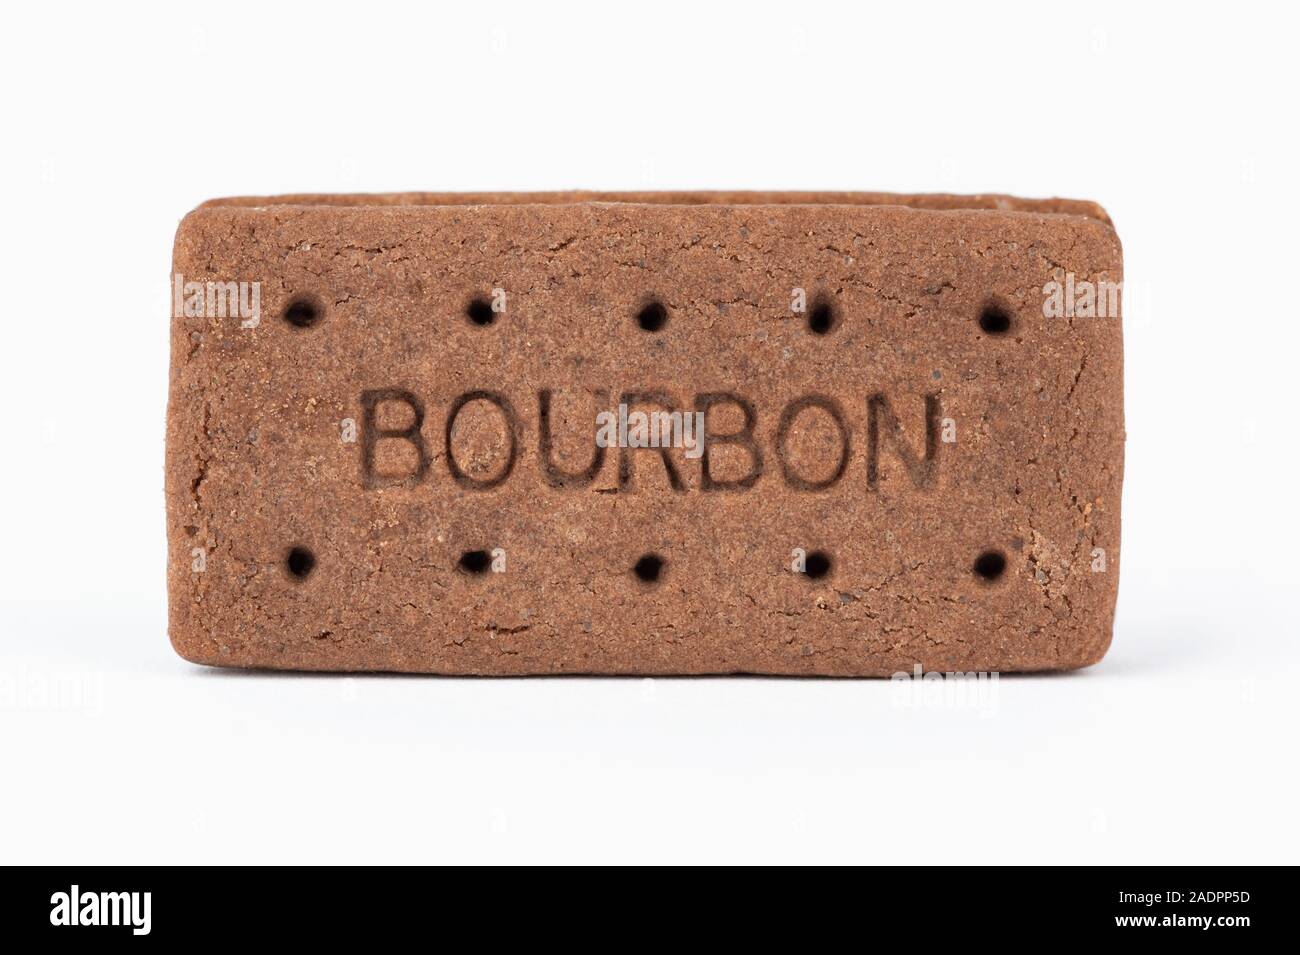 Eine Schokolade, Bourbon keks Schuß auf einem weißen Hintergrund. Stockfoto